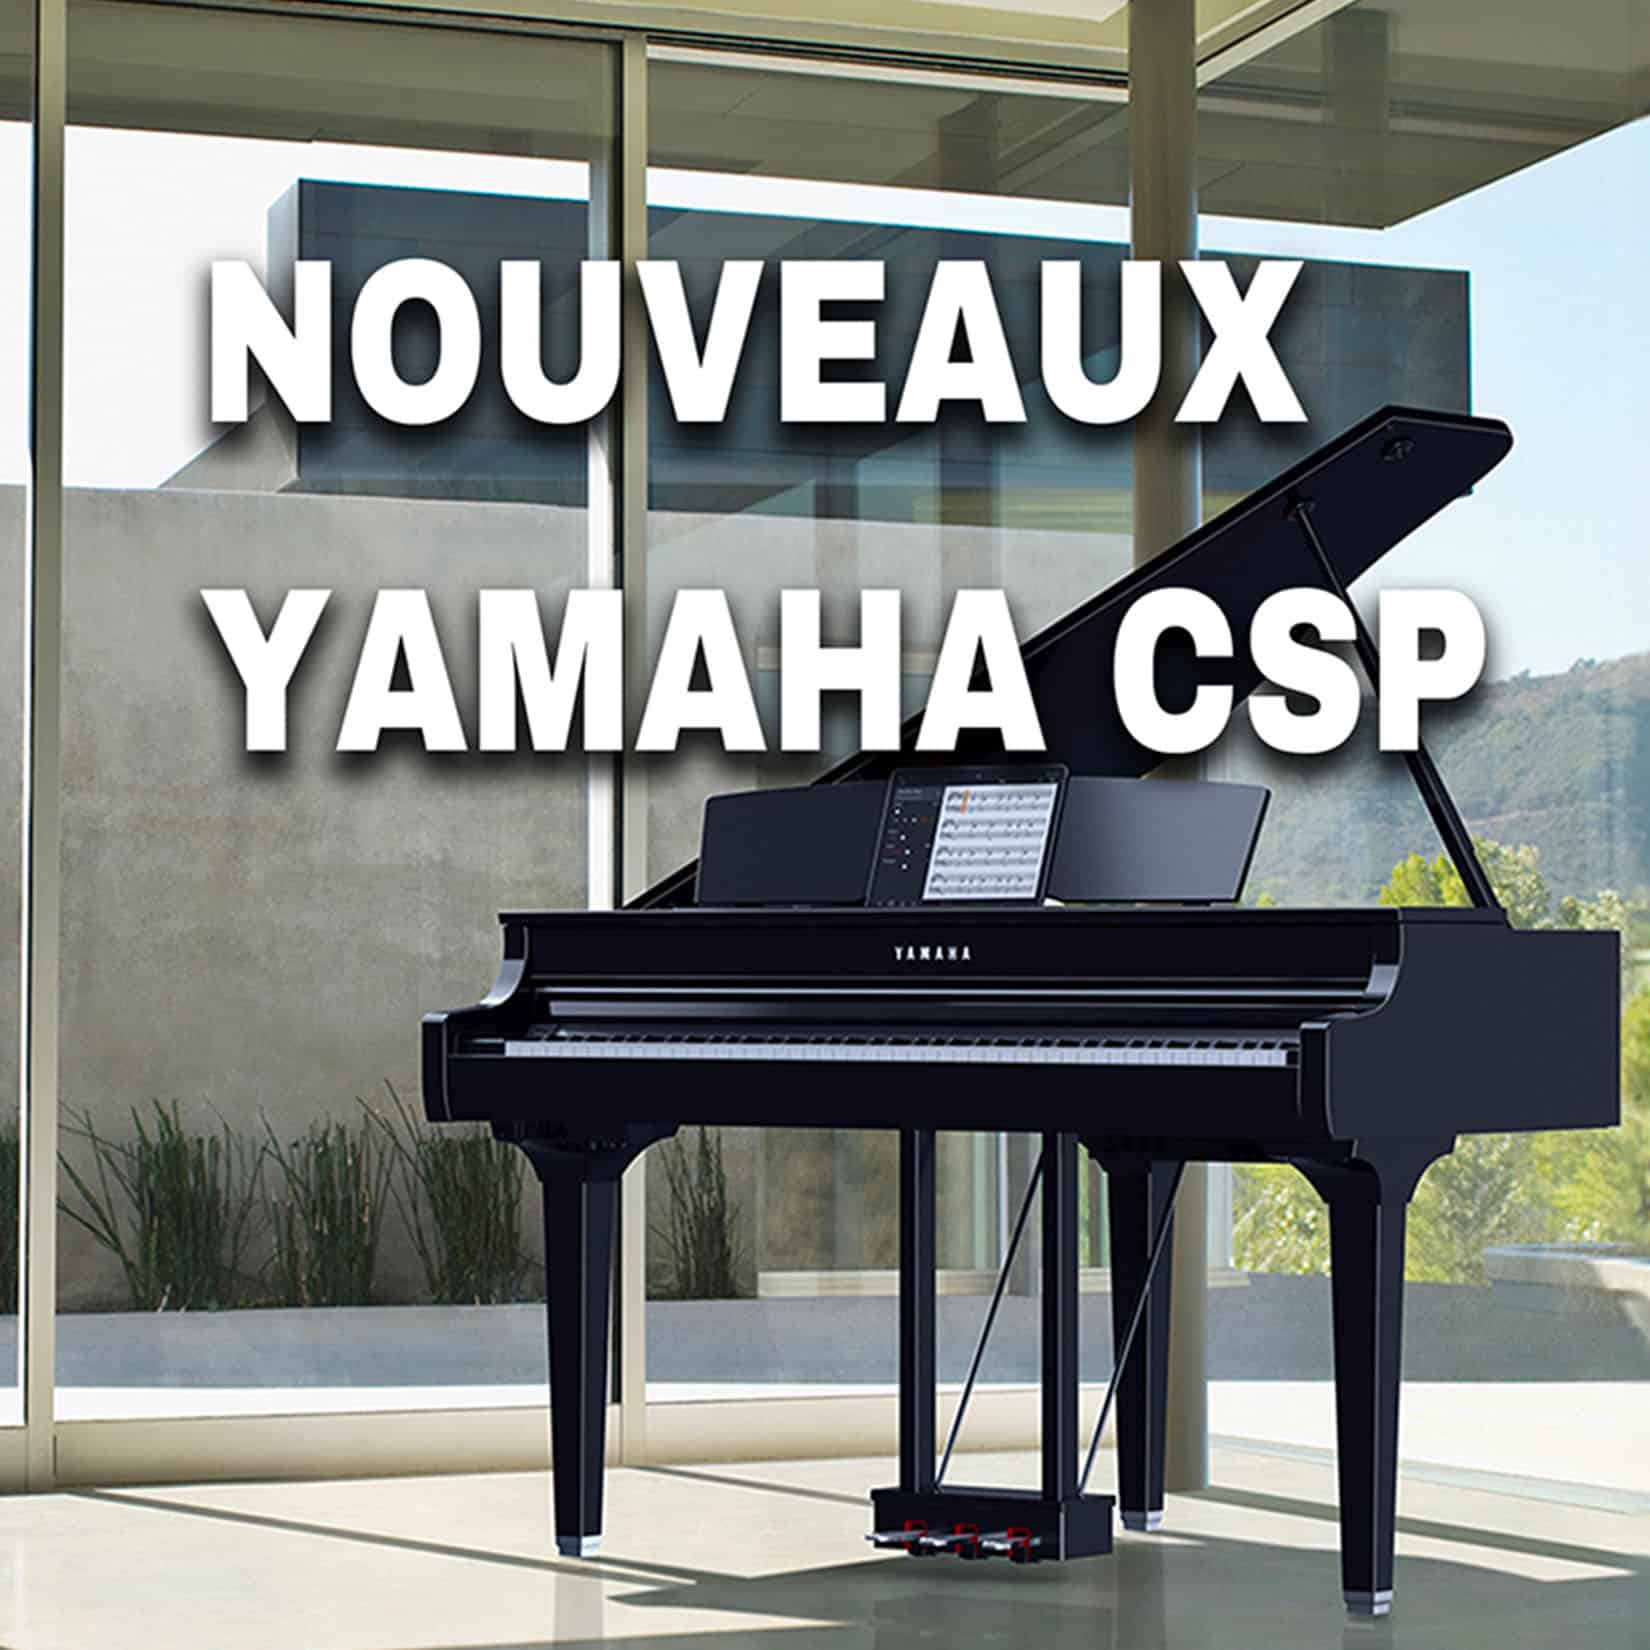 Yamaha annonce les nouveaux CSP : CSP 255, CSP 275, CSP 295, CSP 295GP